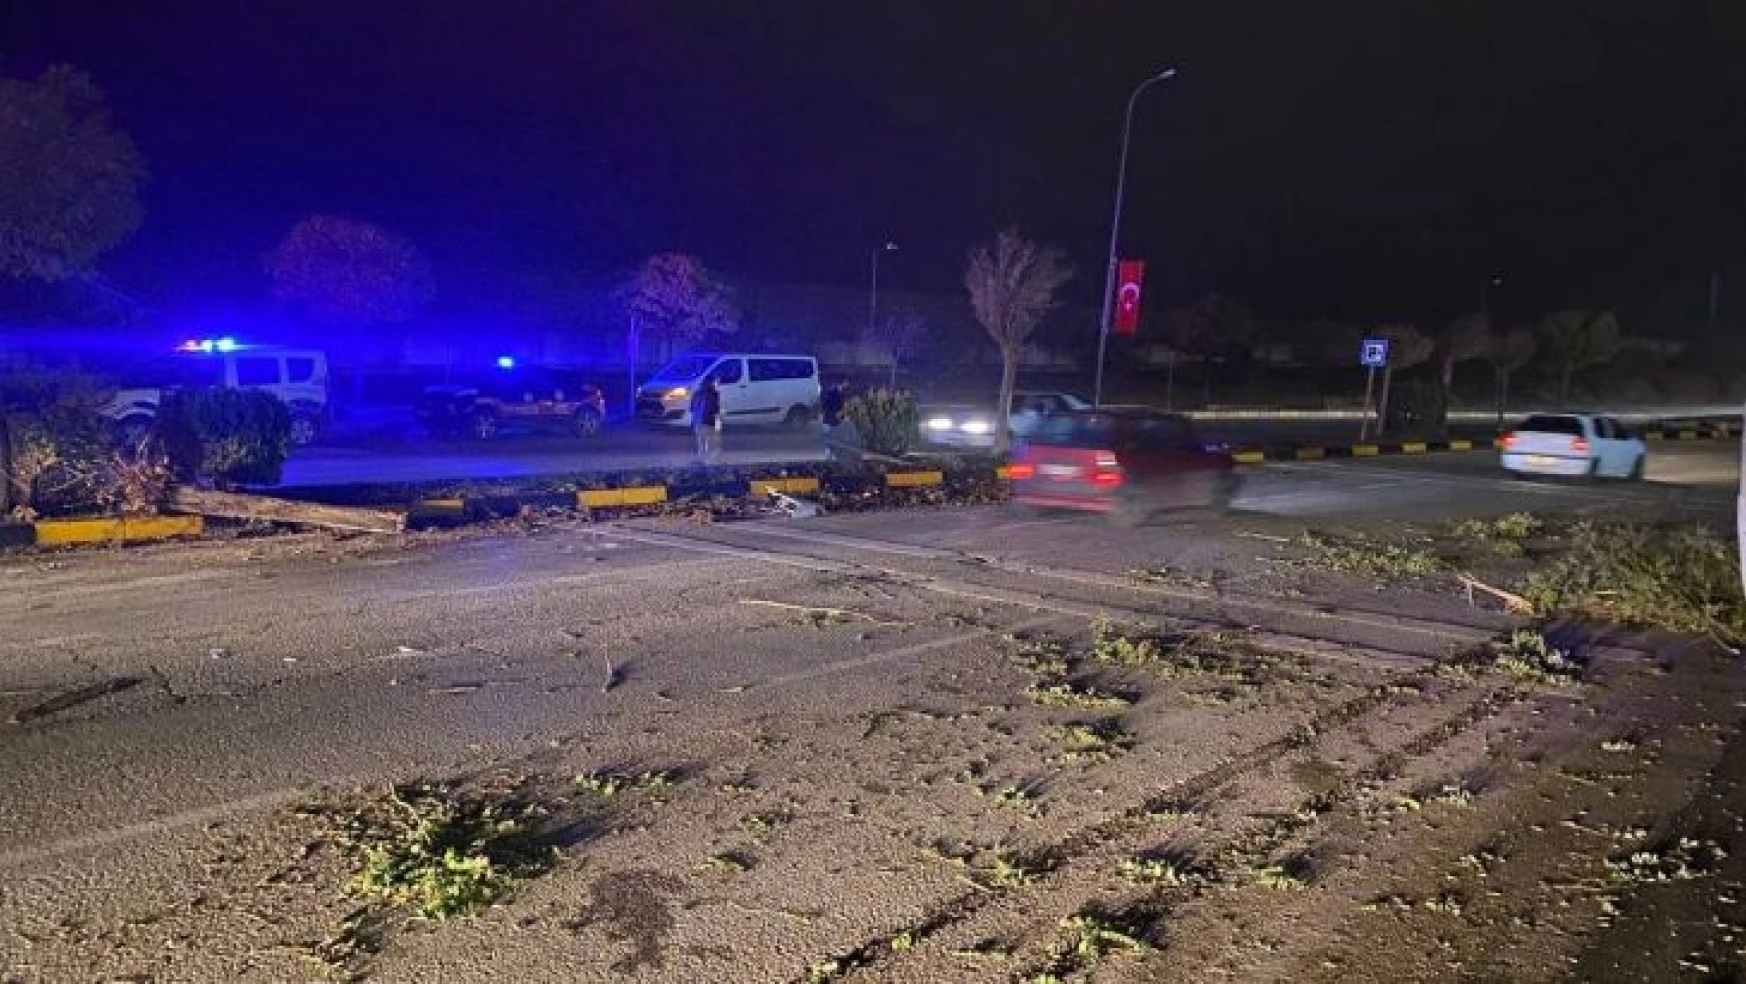 Gaziantep'te çevik kuvvet aracı kaza yaptı: 5 yaralı